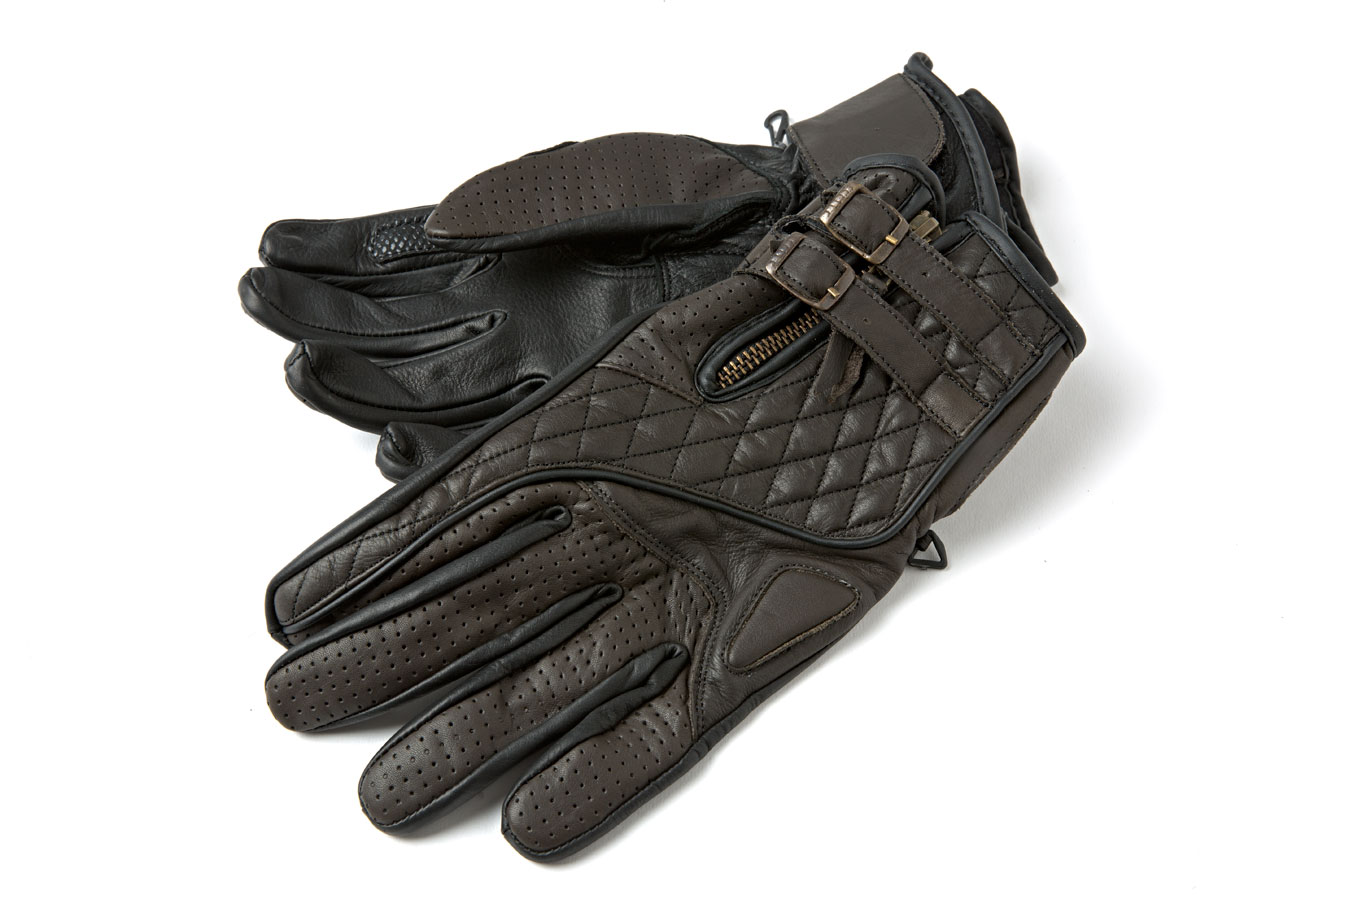 Handschuhe
Gloves
Gants
Rękawiczki
Handschoenen
Guantes